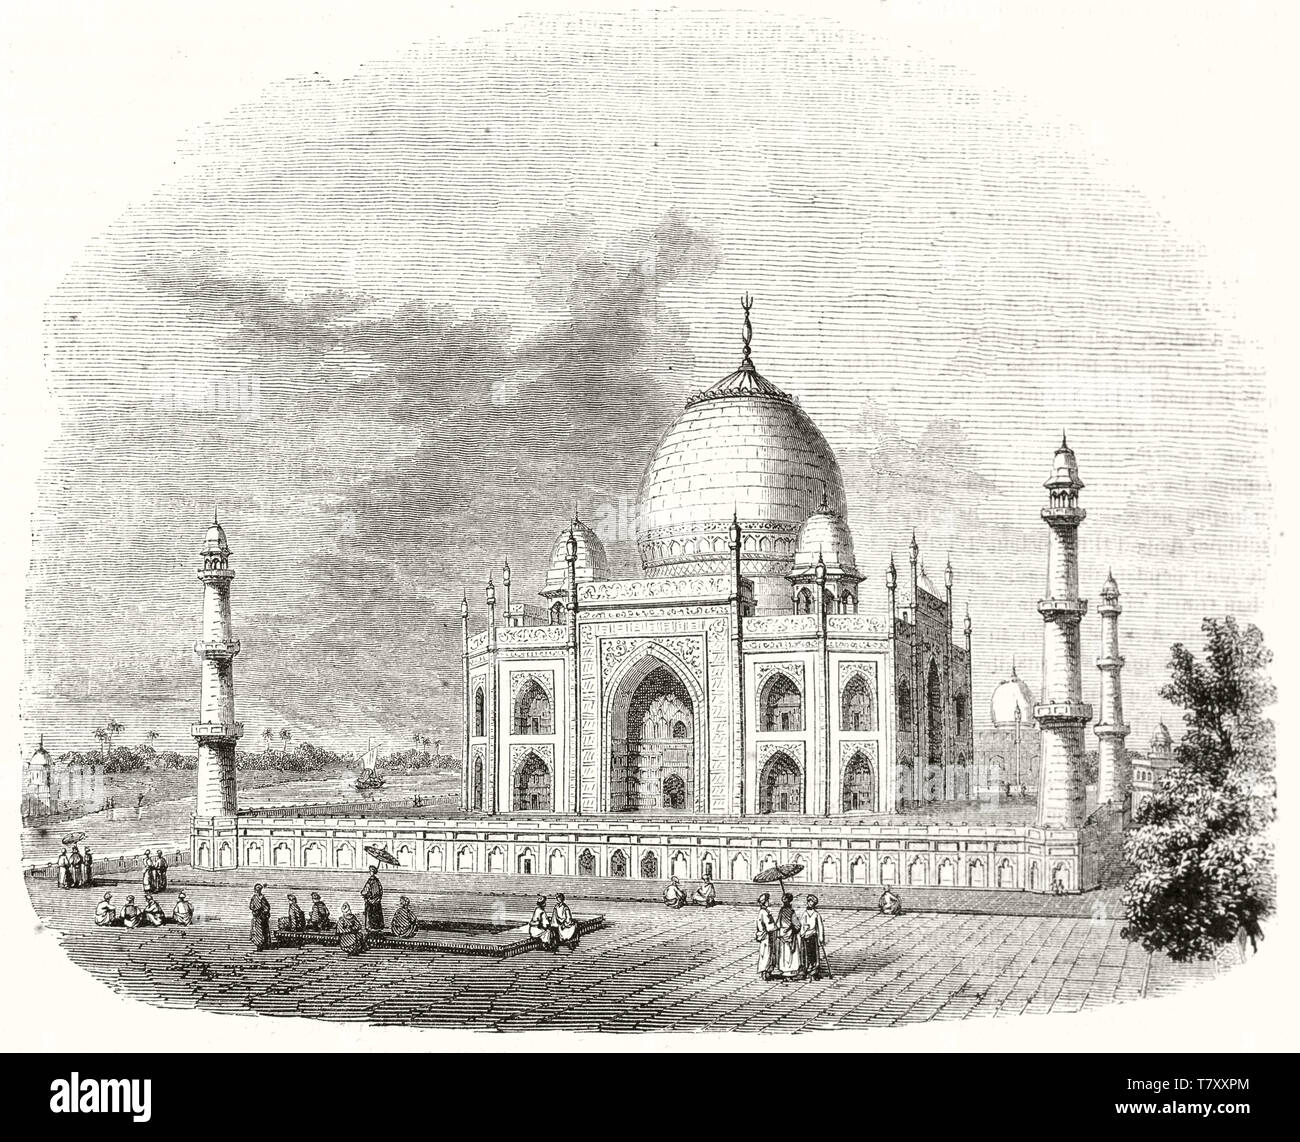 Ancienne vue générale de Taj Mahal Agra Inde, affichées dans une gravure illustration style vintage. L'une des sept merveilles du monde. L'art ancien par Freeman publ. sur Magasin pittoresque Paris 1848 Banque D'Images